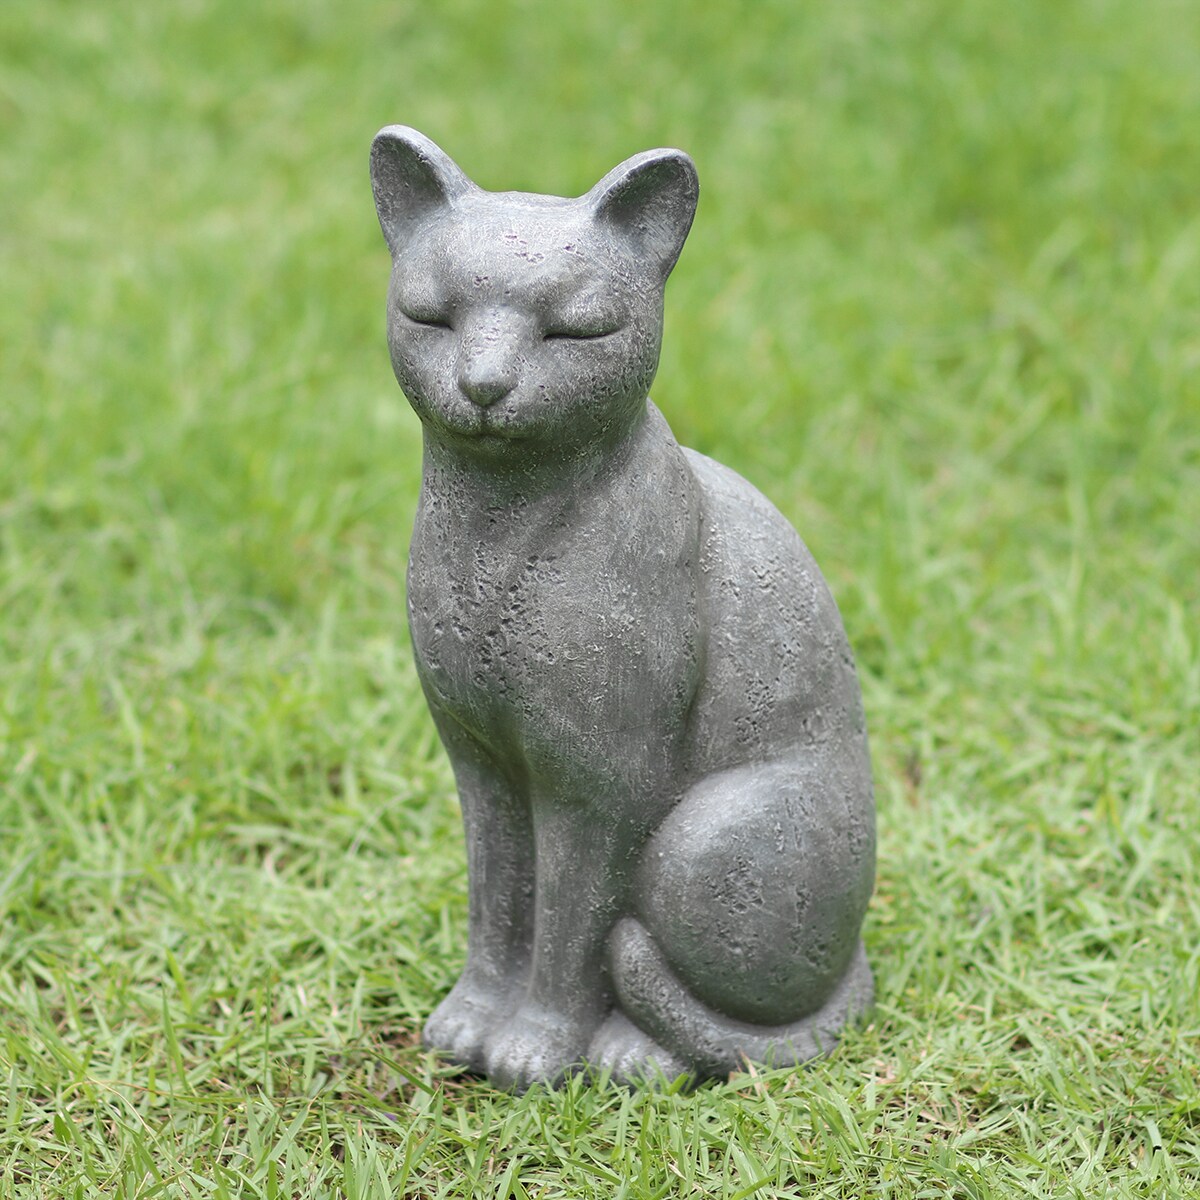 Cat Ornament outdoor Garden Sculptures Animal Lawn Statues Home Patio door décor